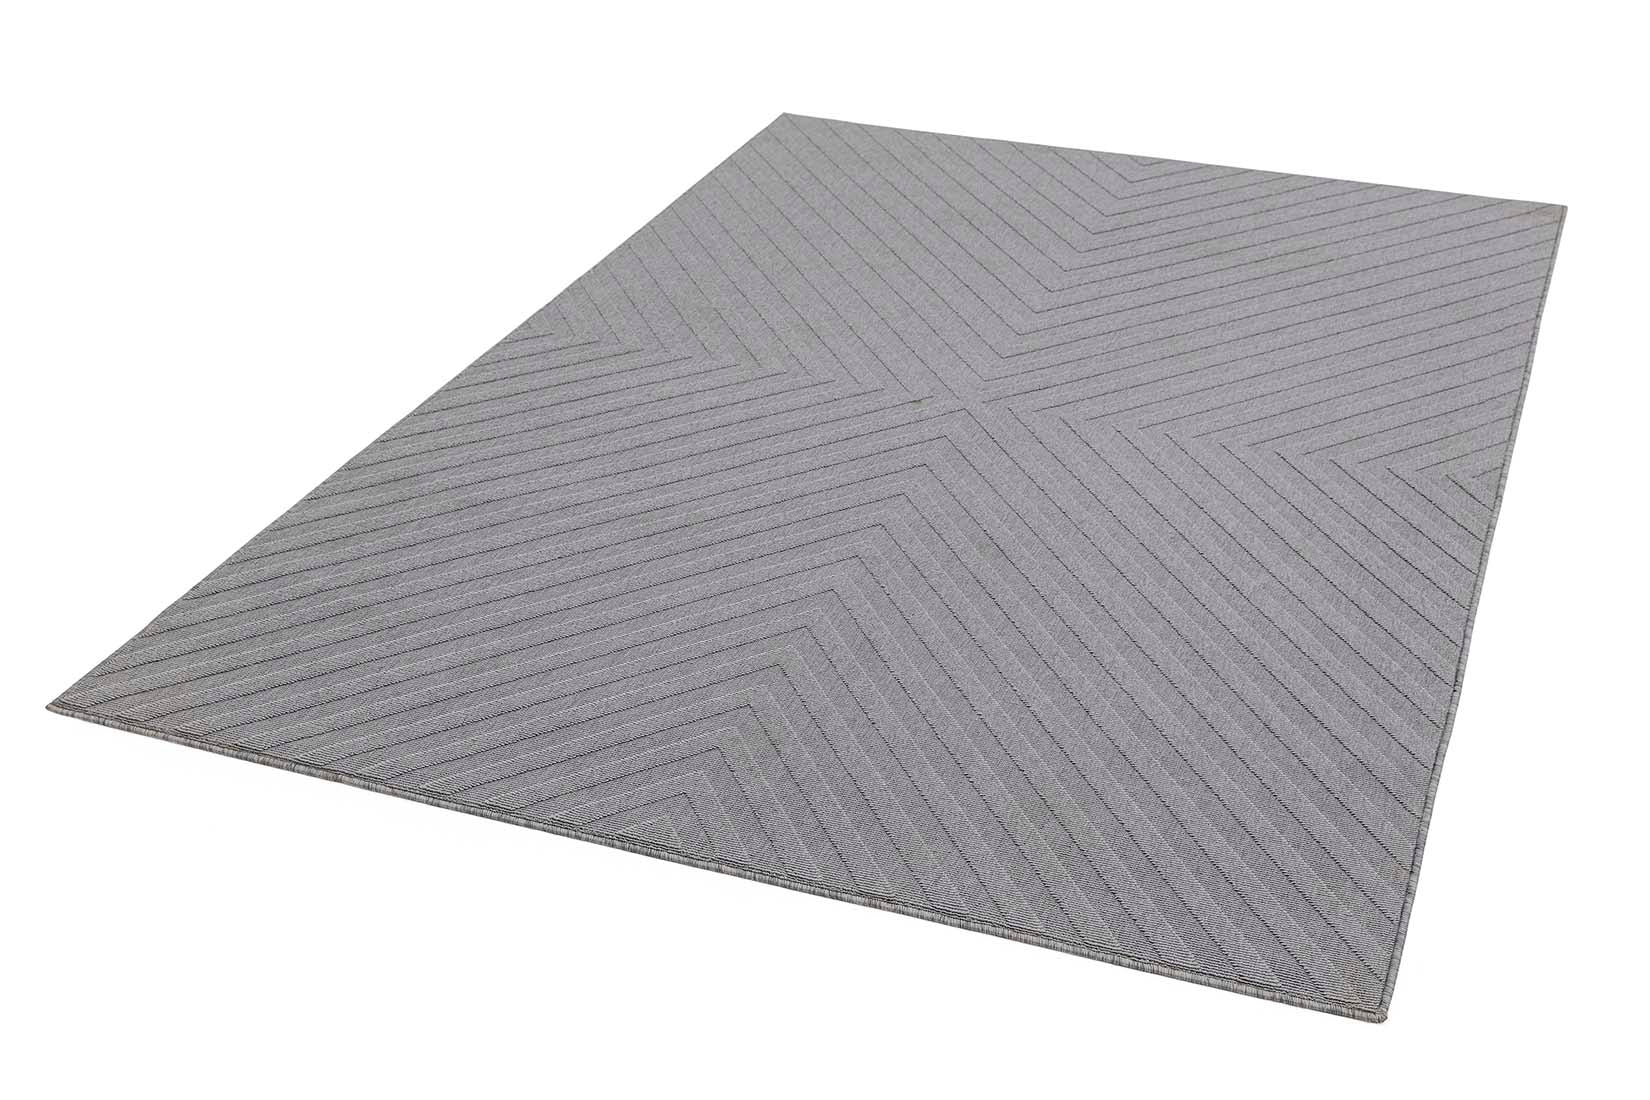 grey indoor/outdoor rug with trellis design
